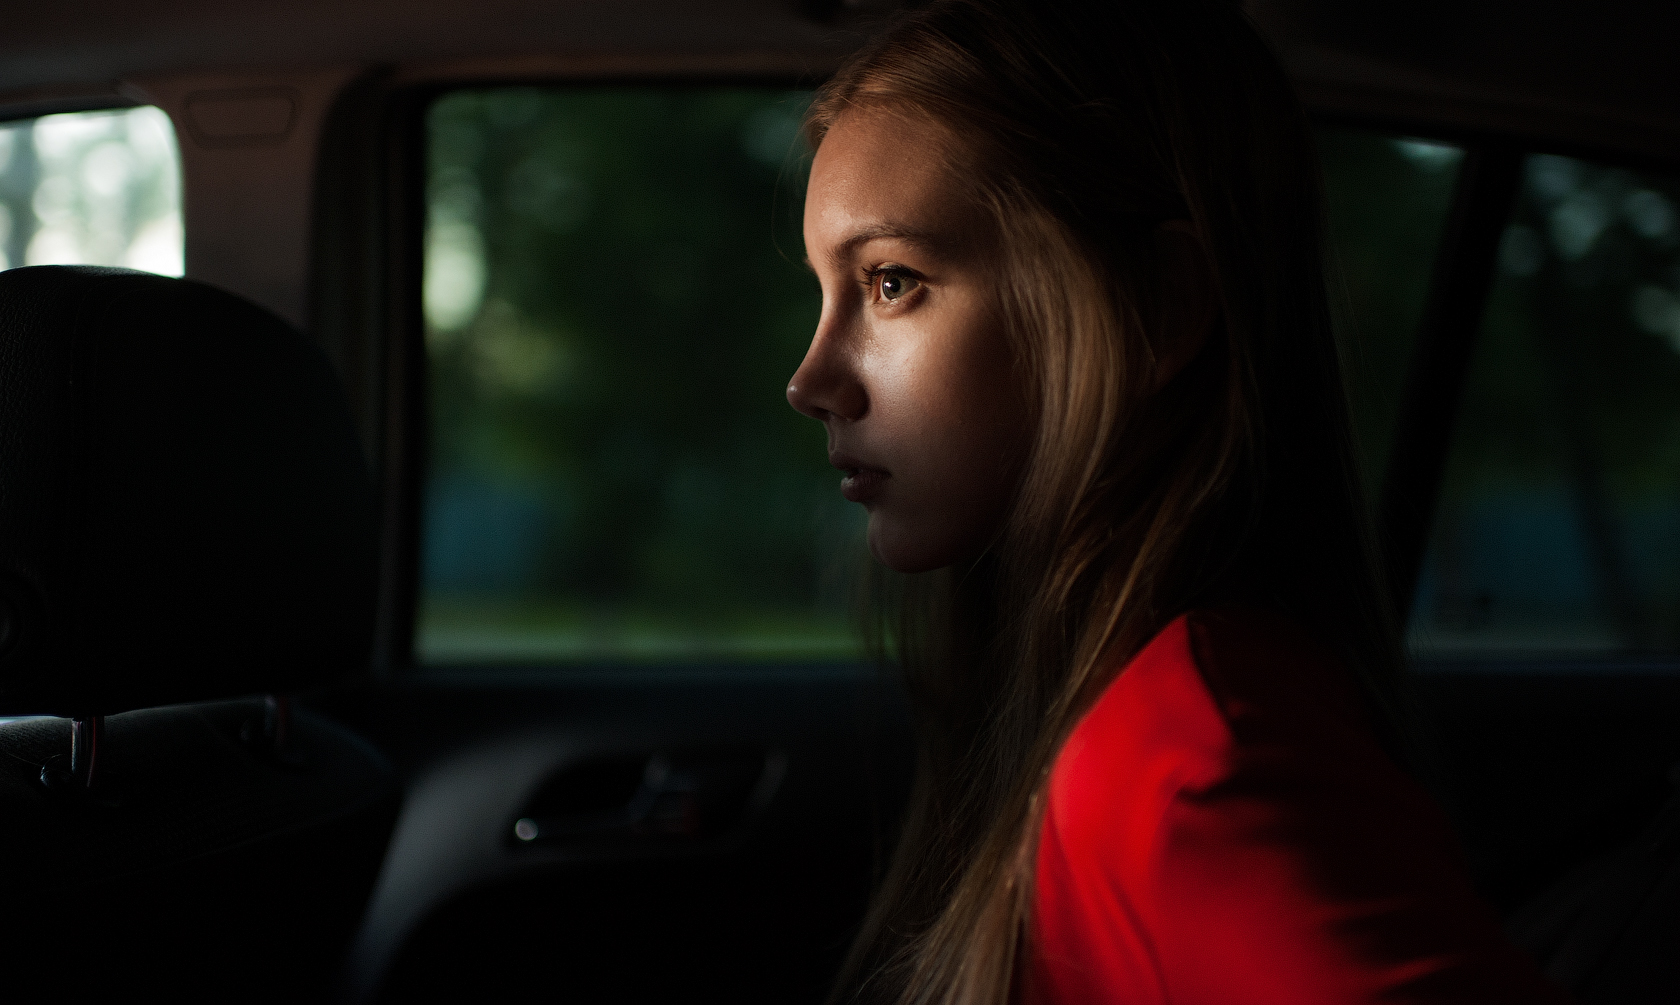 Marat Safin Women Model Inside A Car Depth Of Field Profile Portrait 1680x1005